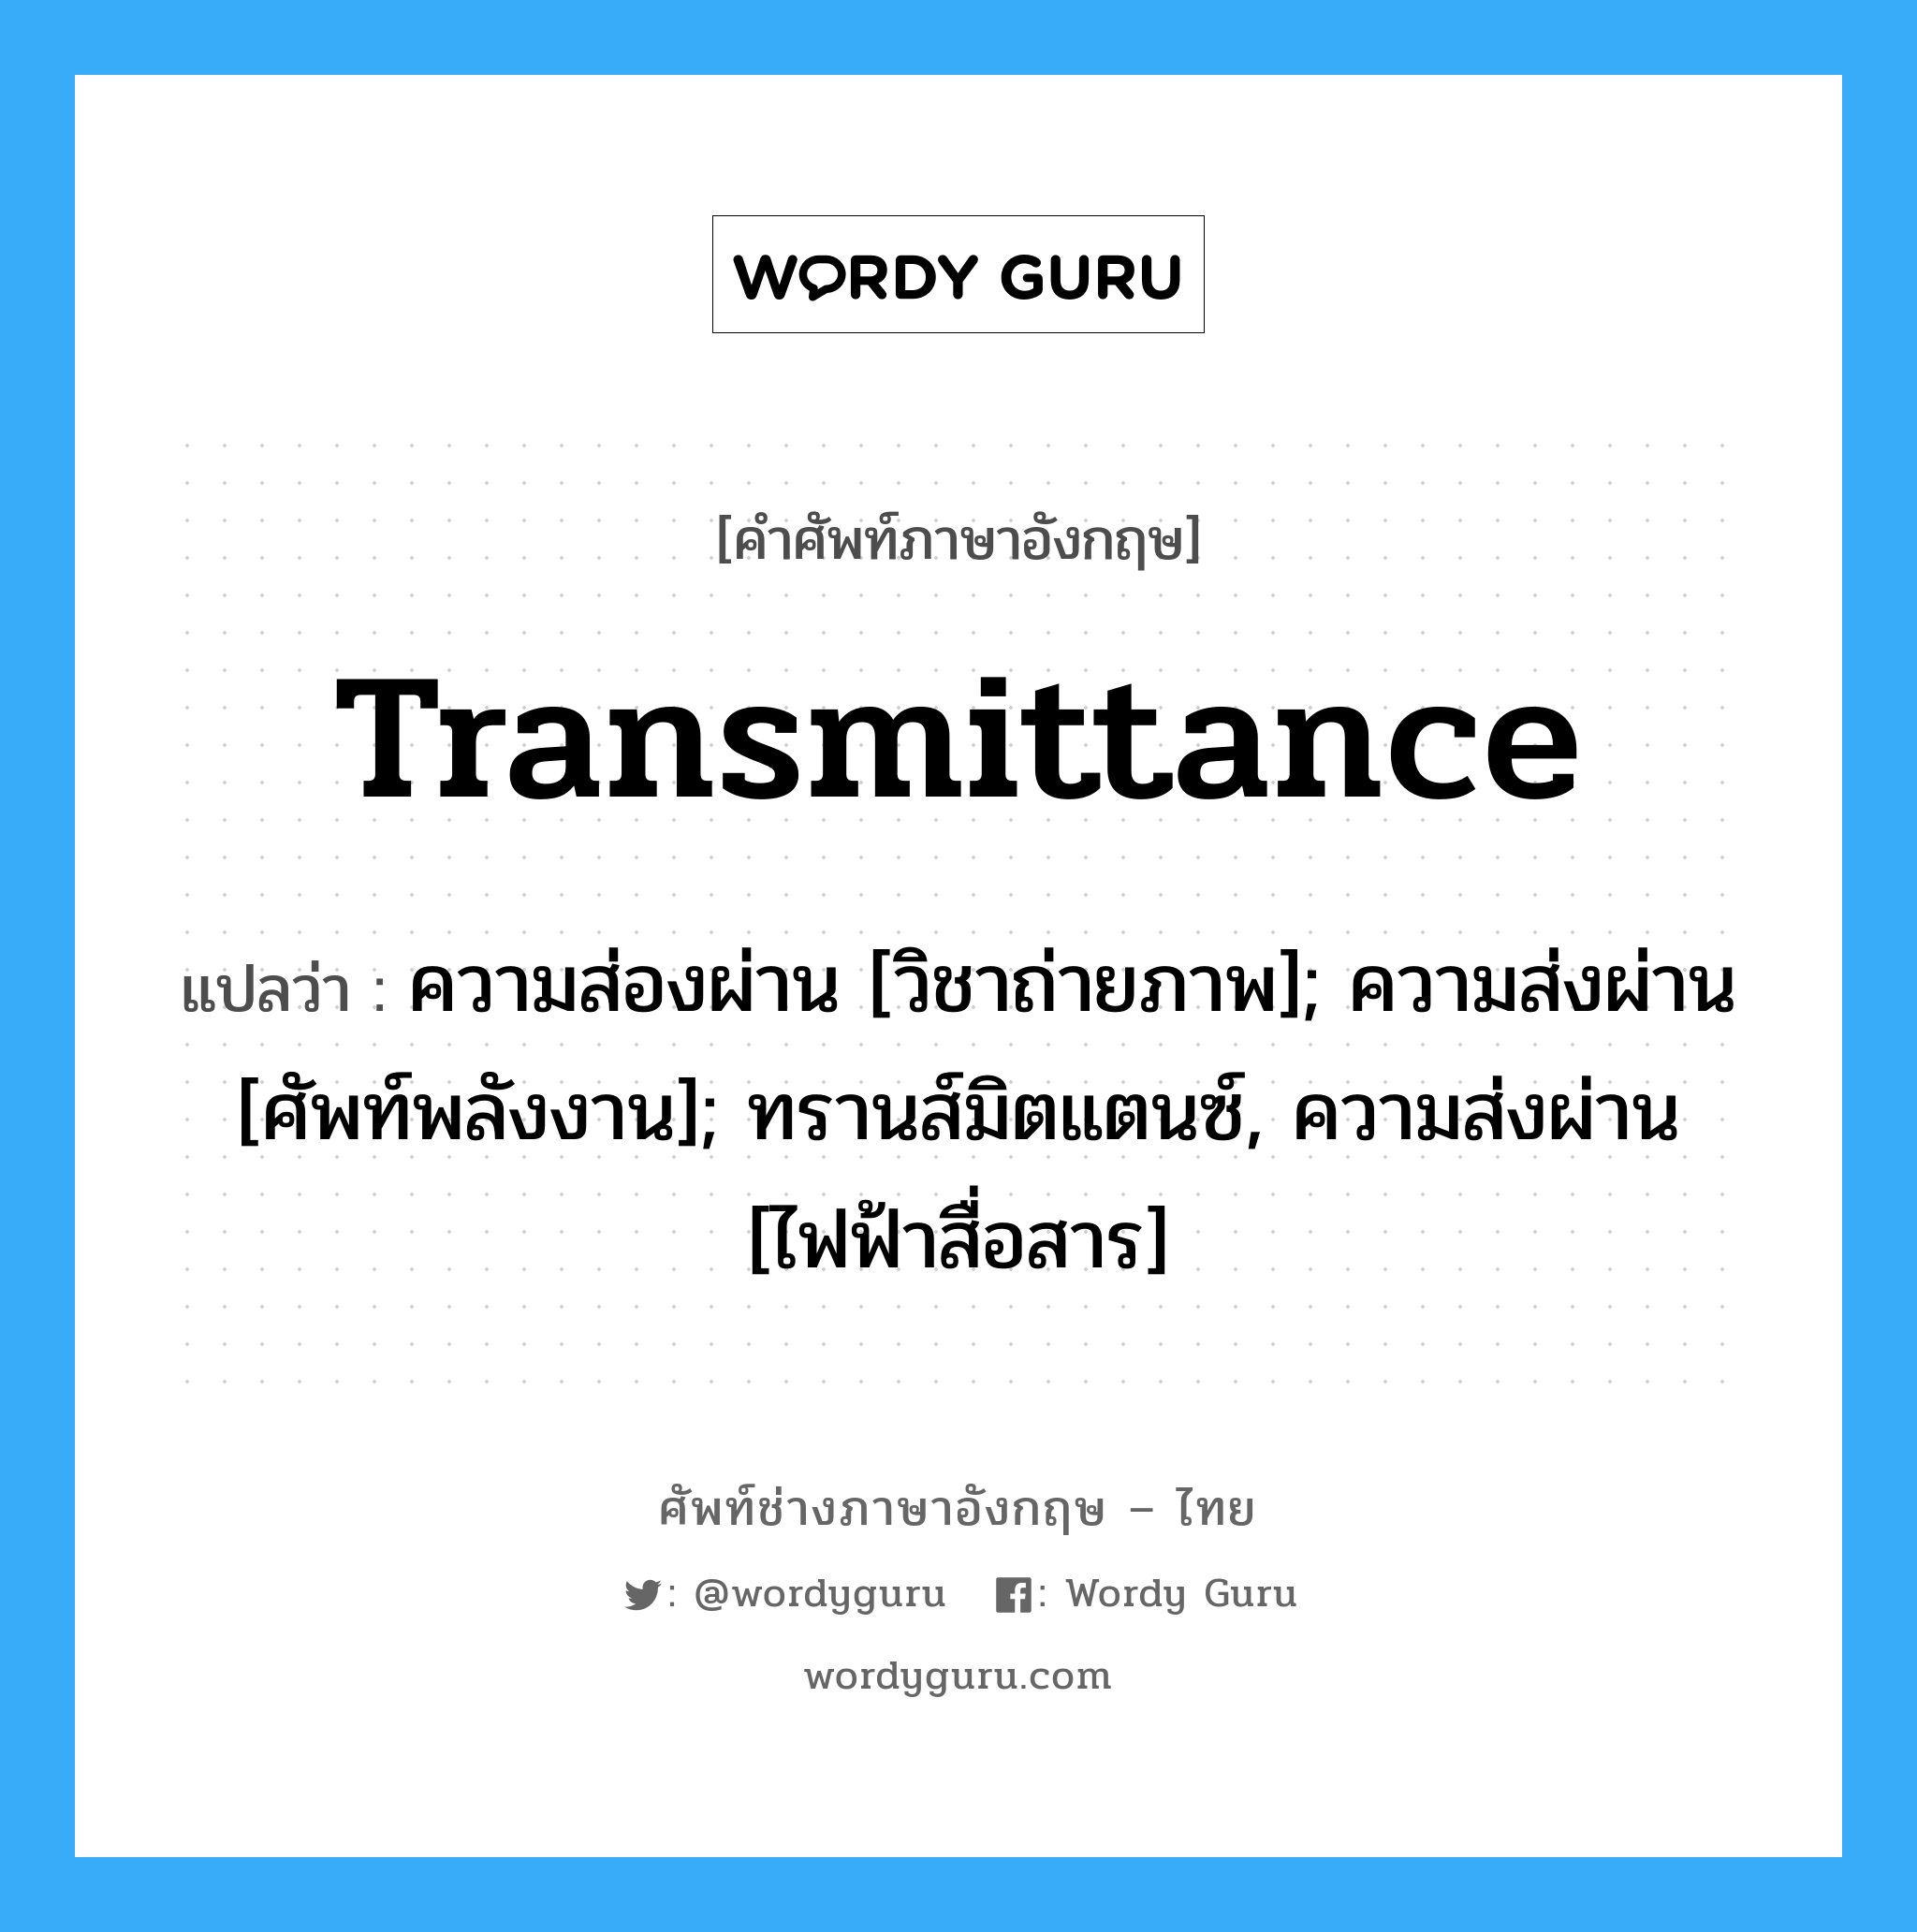 transmittance แปลว่า?, คำศัพท์ช่างภาษาอังกฤษ - ไทย transmittance คำศัพท์ภาษาอังกฤษ transmittance แปลว่า ความส่องผ่าน [วิชาถ่ายภาพ]; ความส่งผ่าน [ศัพท์พลังงาน]; ทรานส์มิตแตนซ์, ความส่งผ่าน [ไฟฟ้าสื่อสาร]